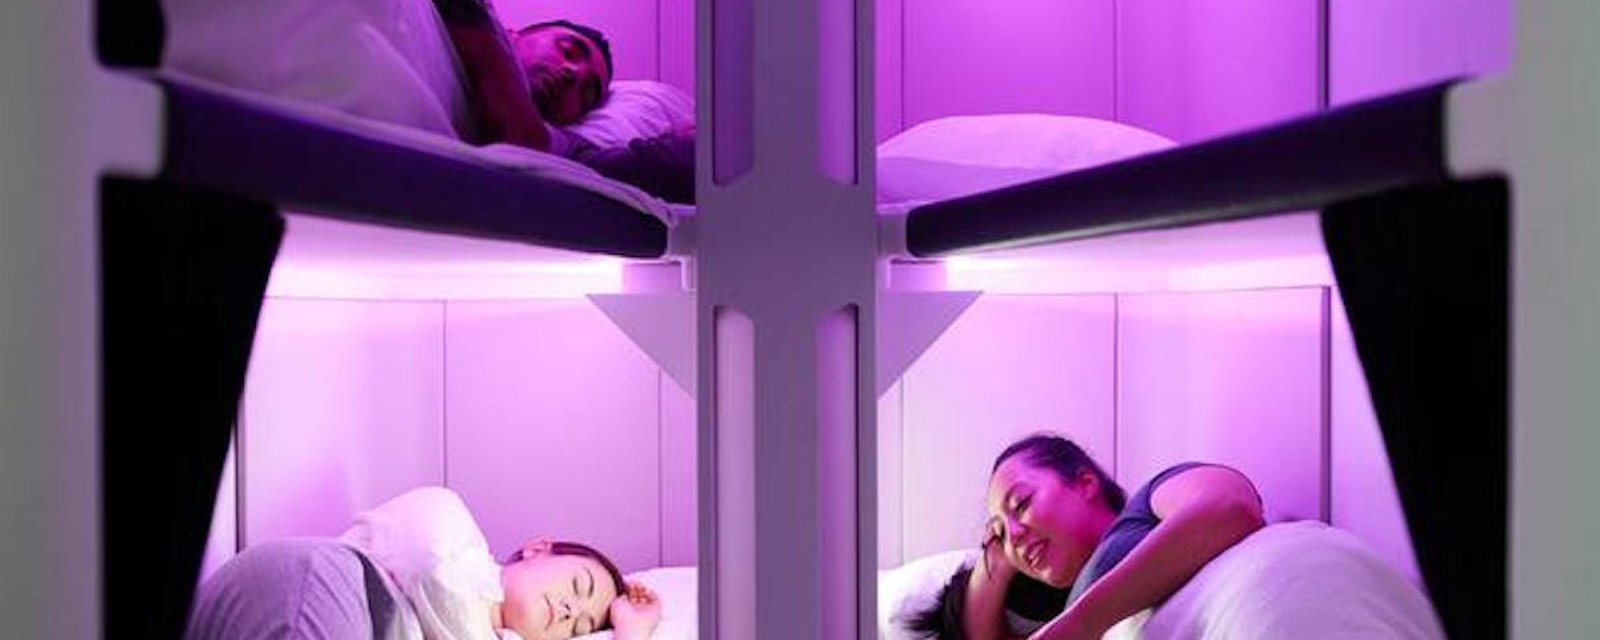 Une compagnie aérienne de Nouvelle-Zélande propose des lits en classe économique